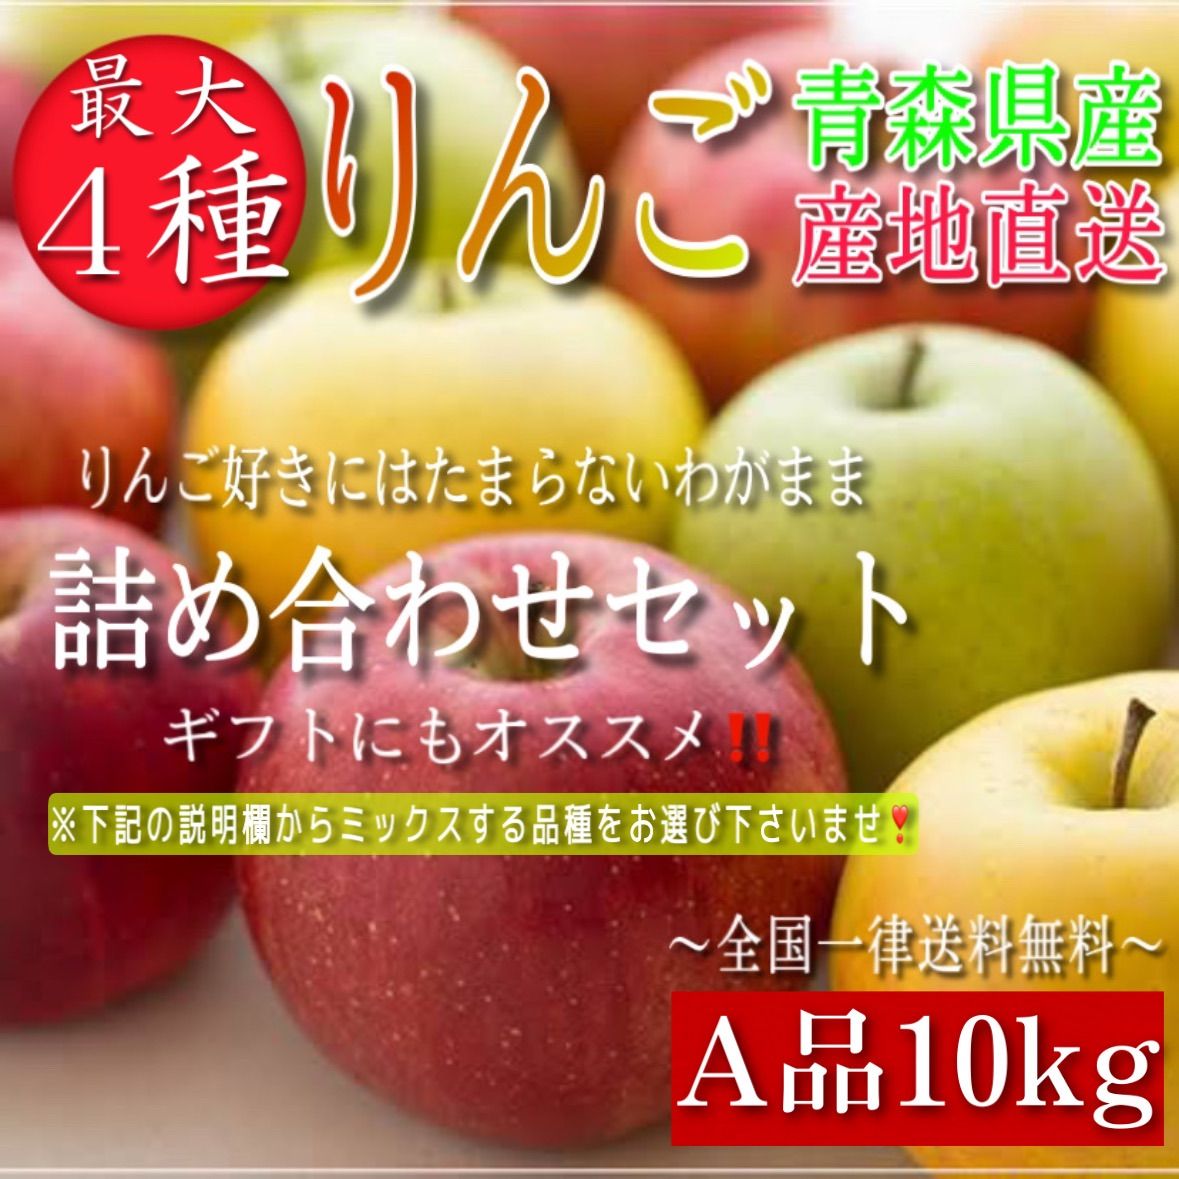 青森県産 最大4種ミックス りんご【A品10kg】【送料無料】【農家直送】ふじ-0